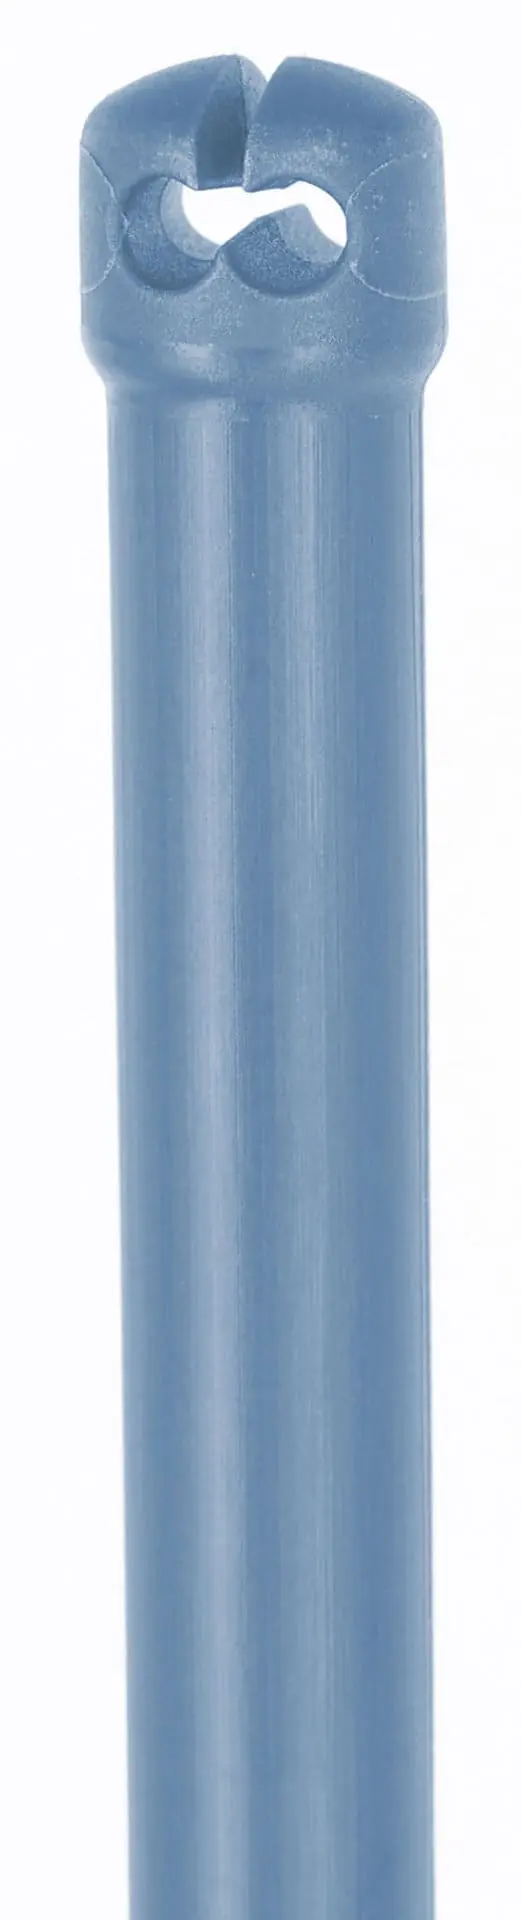 Birkaháló TitanNet Premium 50m x 108 cm narancssárga/kék dupla hegy